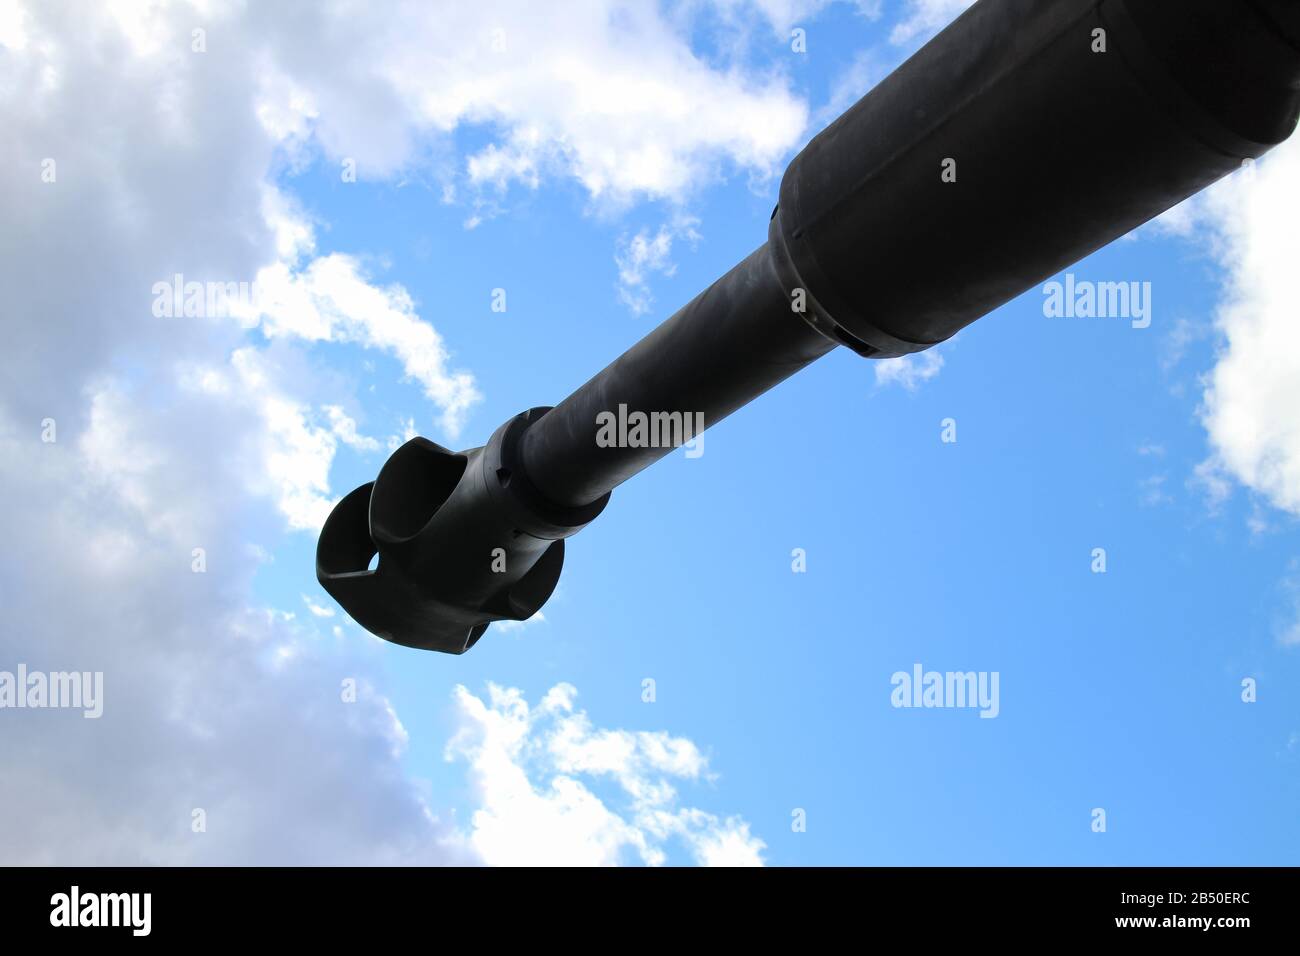 Vista inferior del cañón de tanques contra el cielo azul y las nubes, concepto de guerra y conflicto, paz en la Tierra Foto de stock